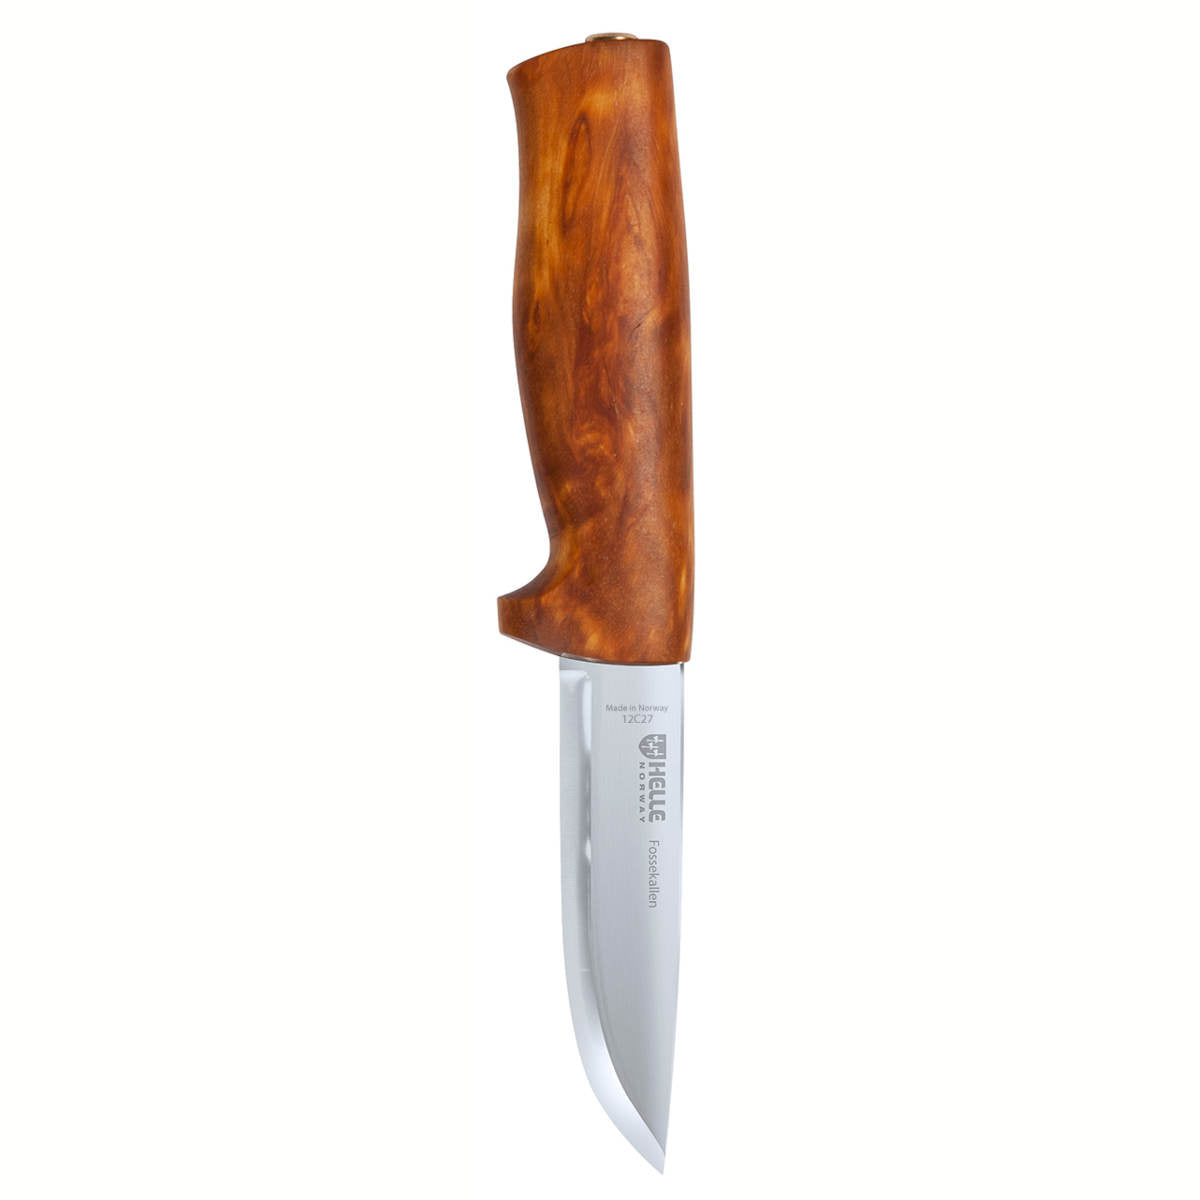  HELLE Knives - Alden - Fixed Blade Men's Outdoor